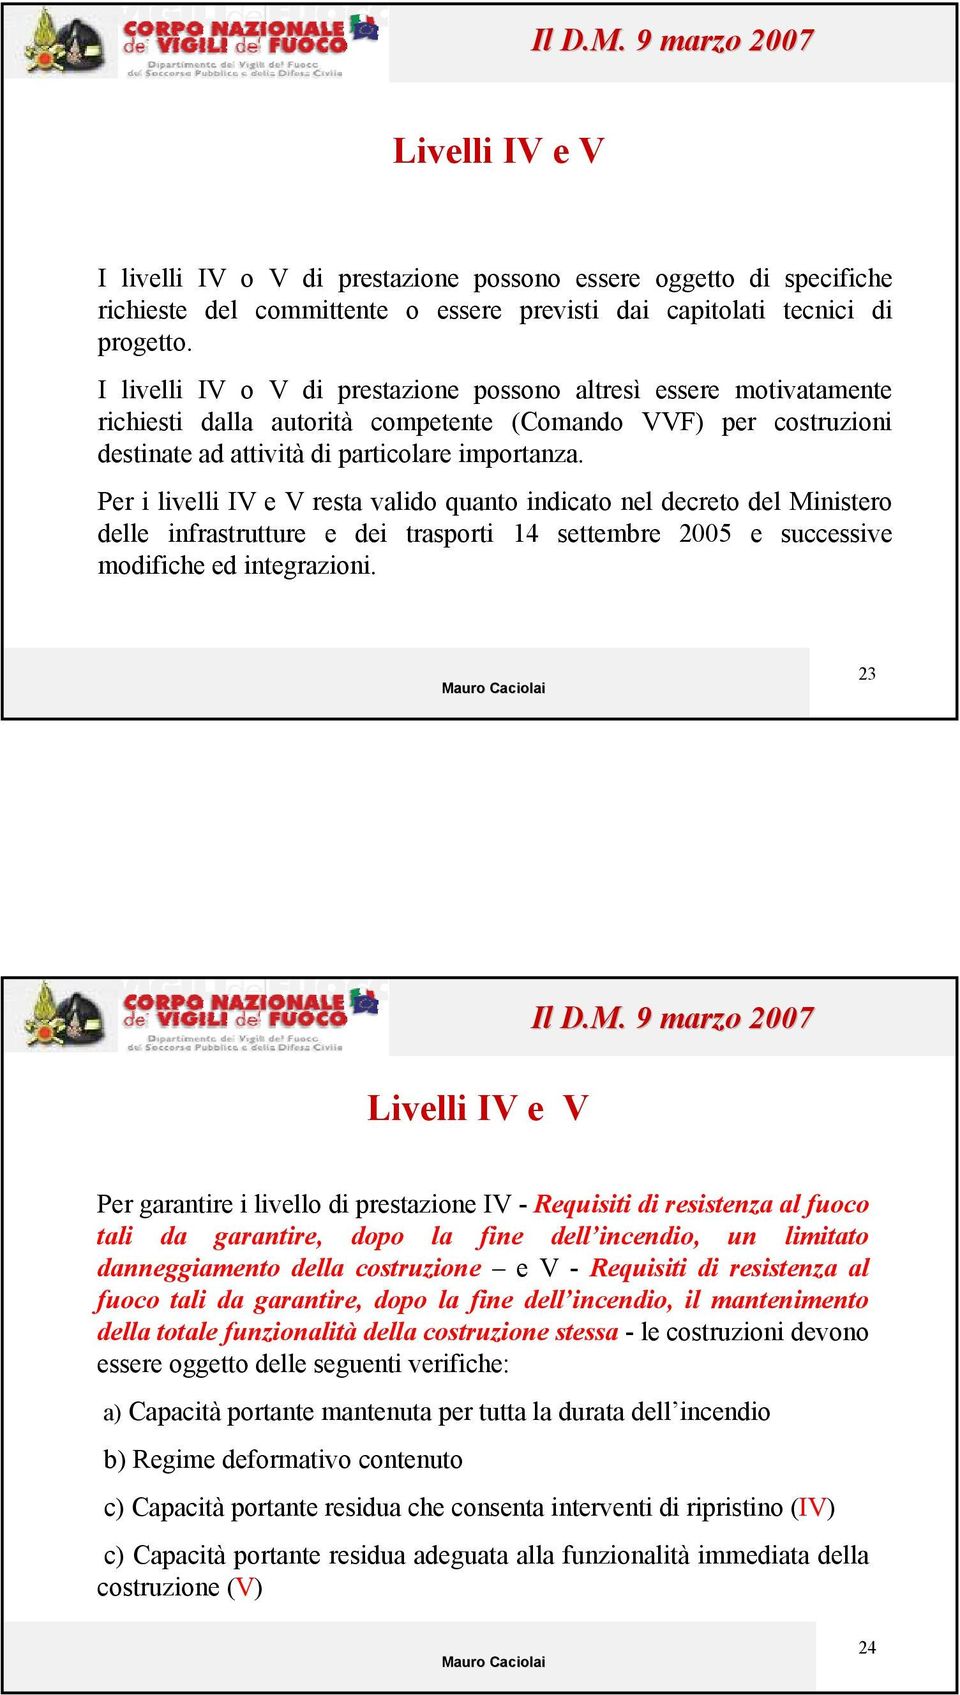 Per i livelli IV e V resta valido quanto indicato nel decreto del Ministero delle infrastrutture e dei trasporti 14 settembre 2005 e successive modifiche ed integrazioni.